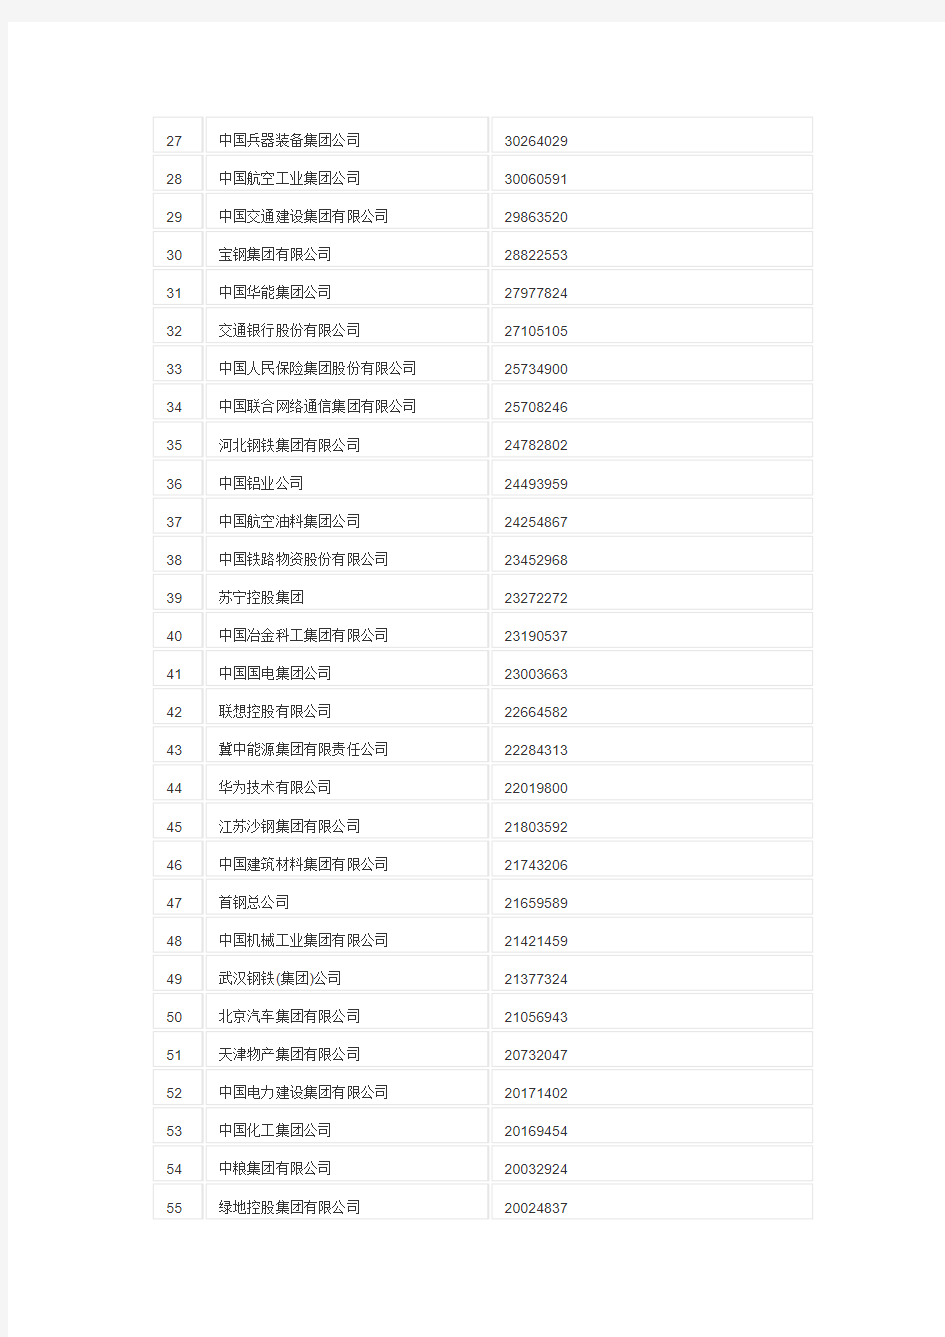 2013年中国企业500强名单资料